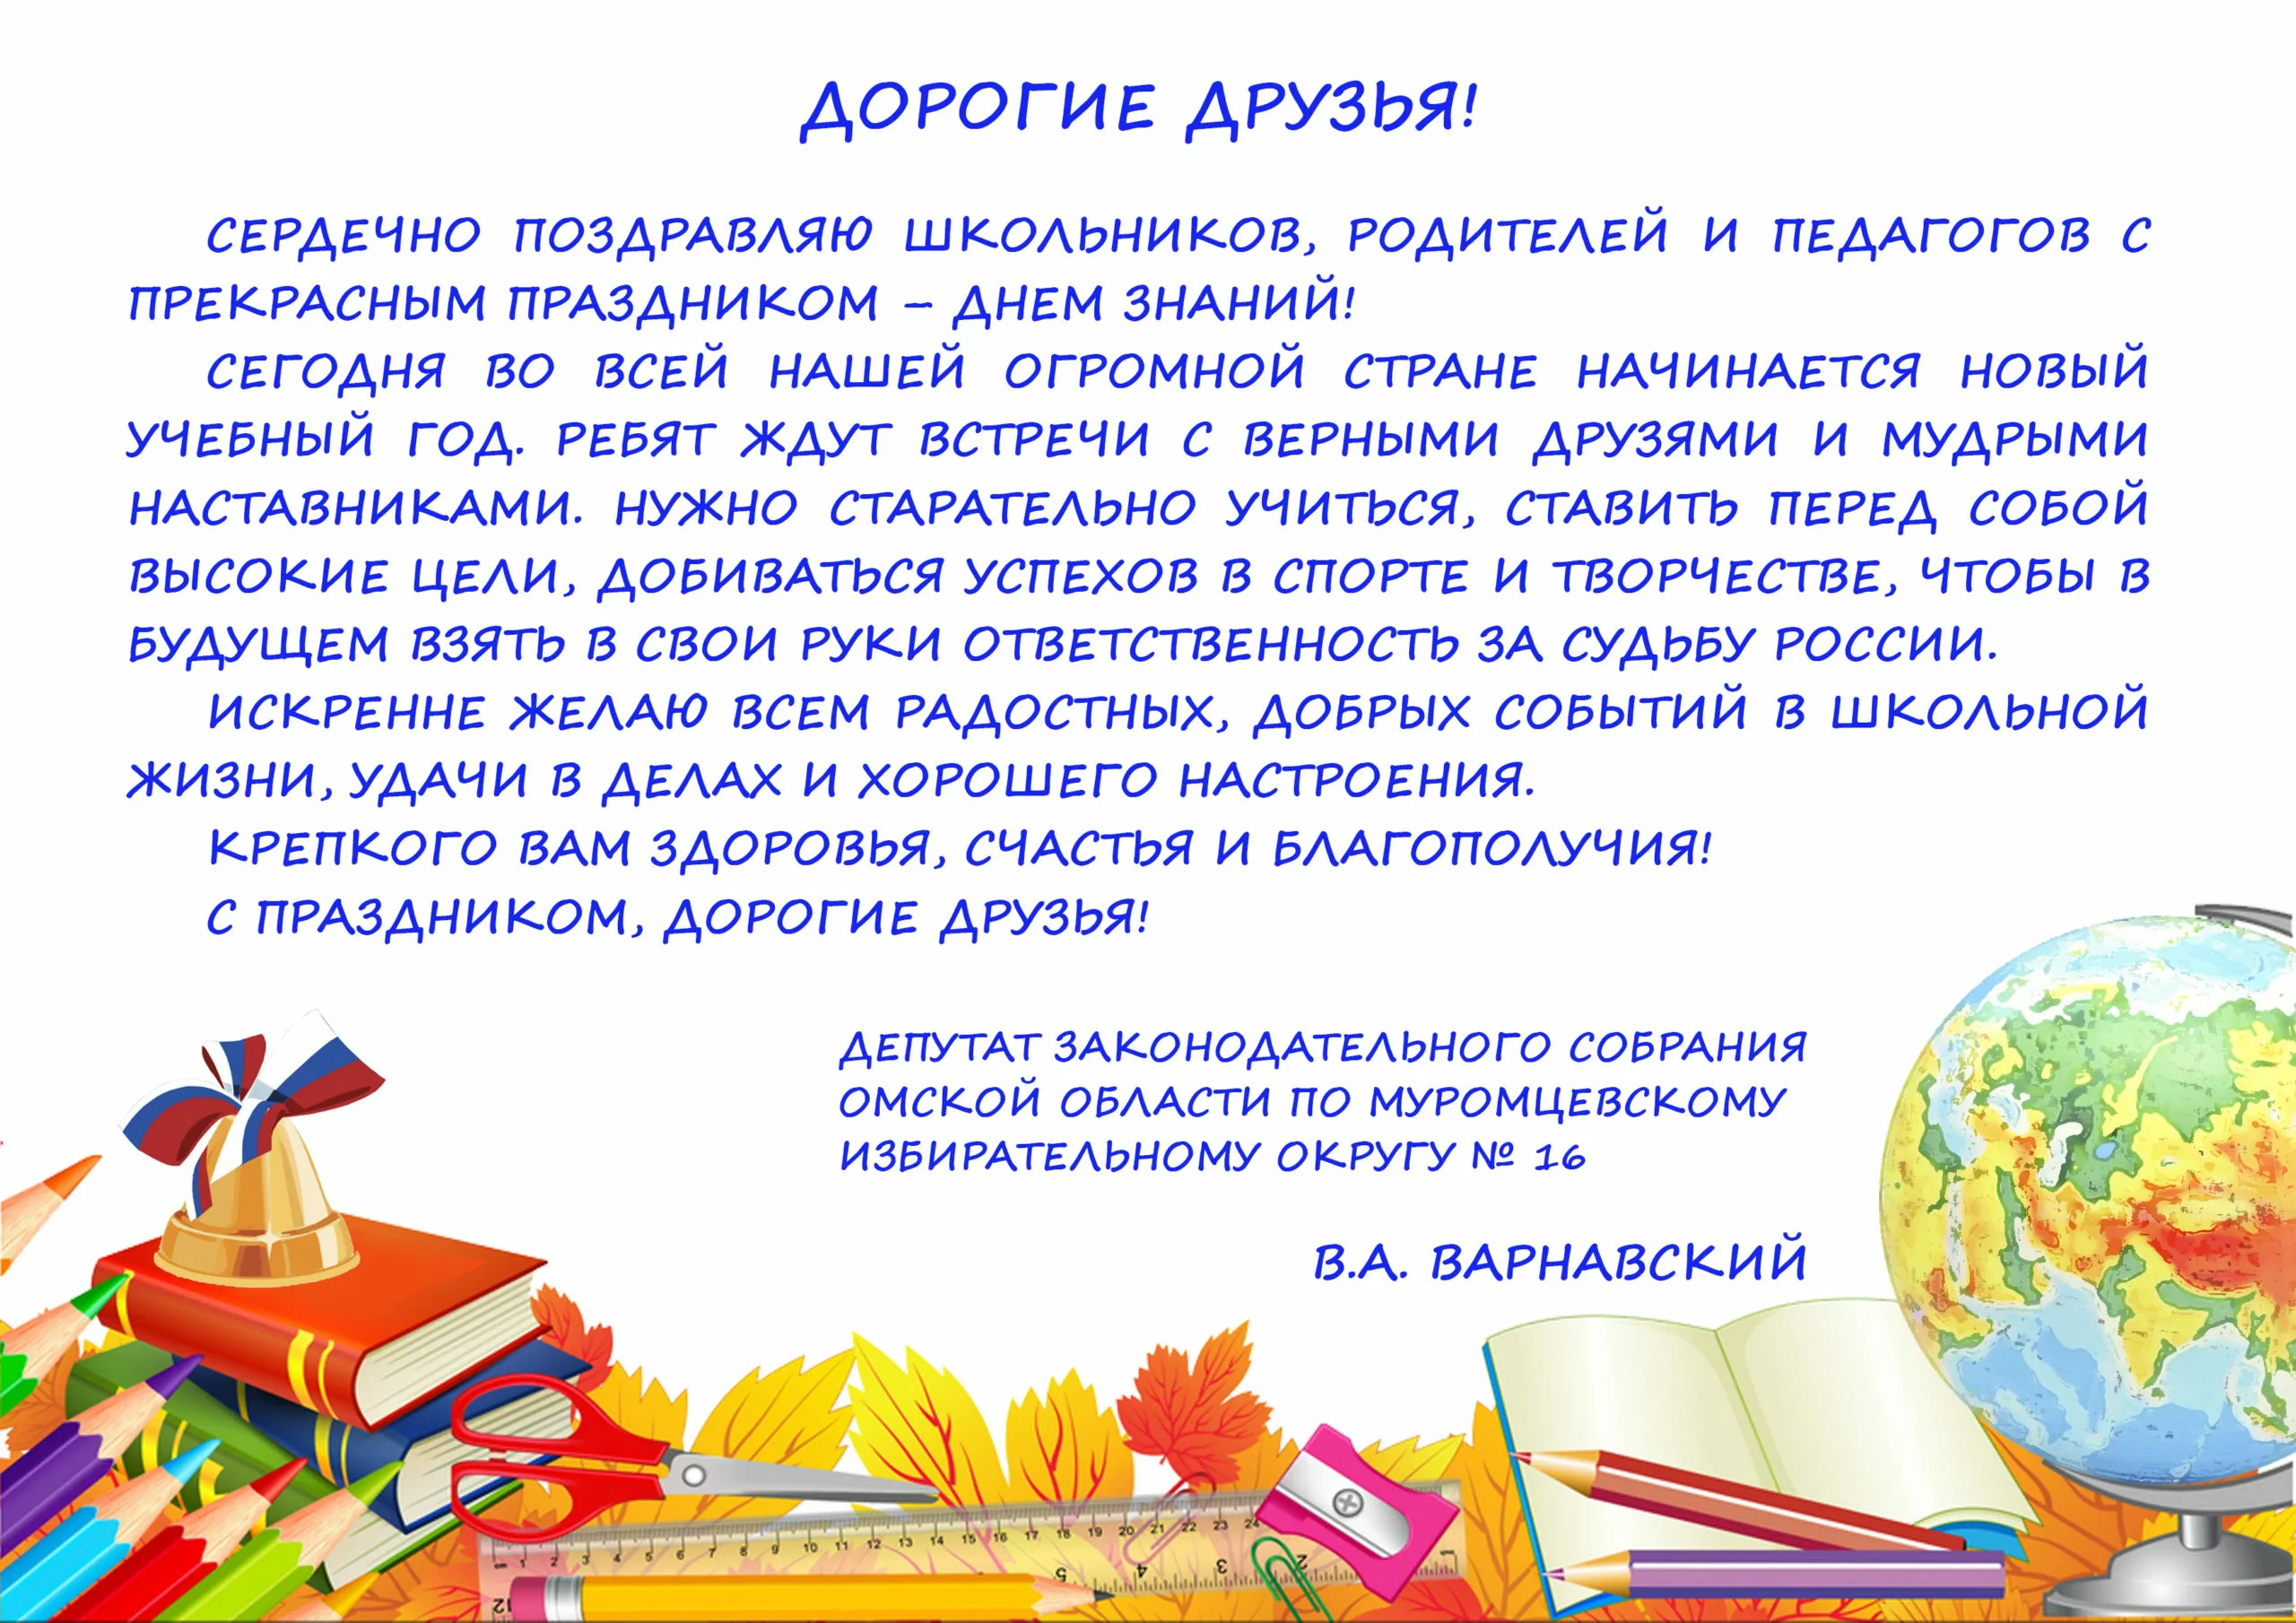 Слова первый поздравил. Поздравление администрации на 1 сентября. Открытка "с днем знаний". Поздравление ученику. Поздравляем всех учителей и учеников с днем знаний.